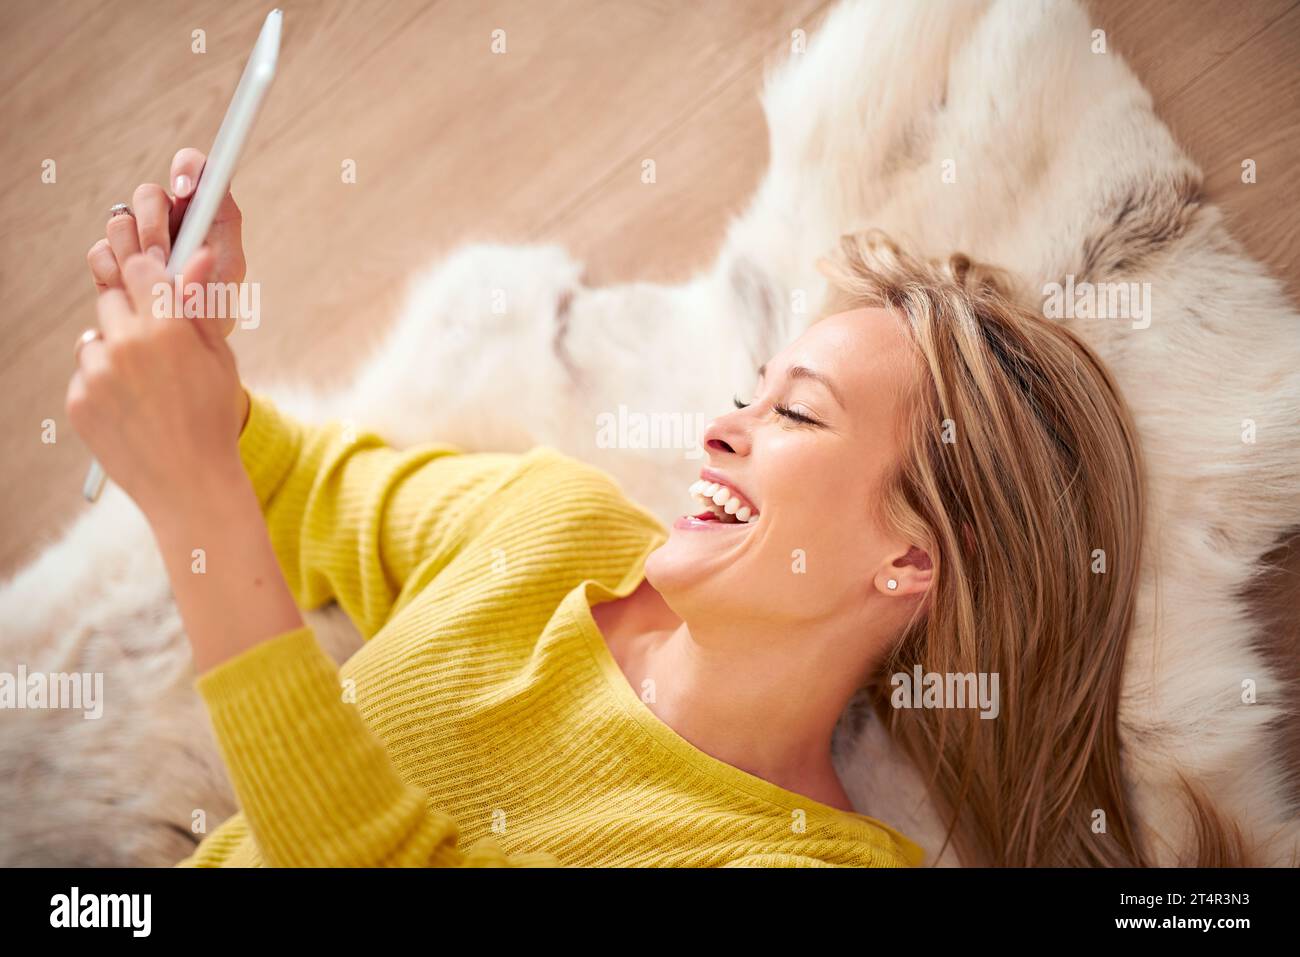 Aber zuerst machen wir ein Selfie. Eine Yong-Frau lächelt fröhlich, während sie ein Selbstporträt auf ihrem digitalen Tablet macht. Stockfoto